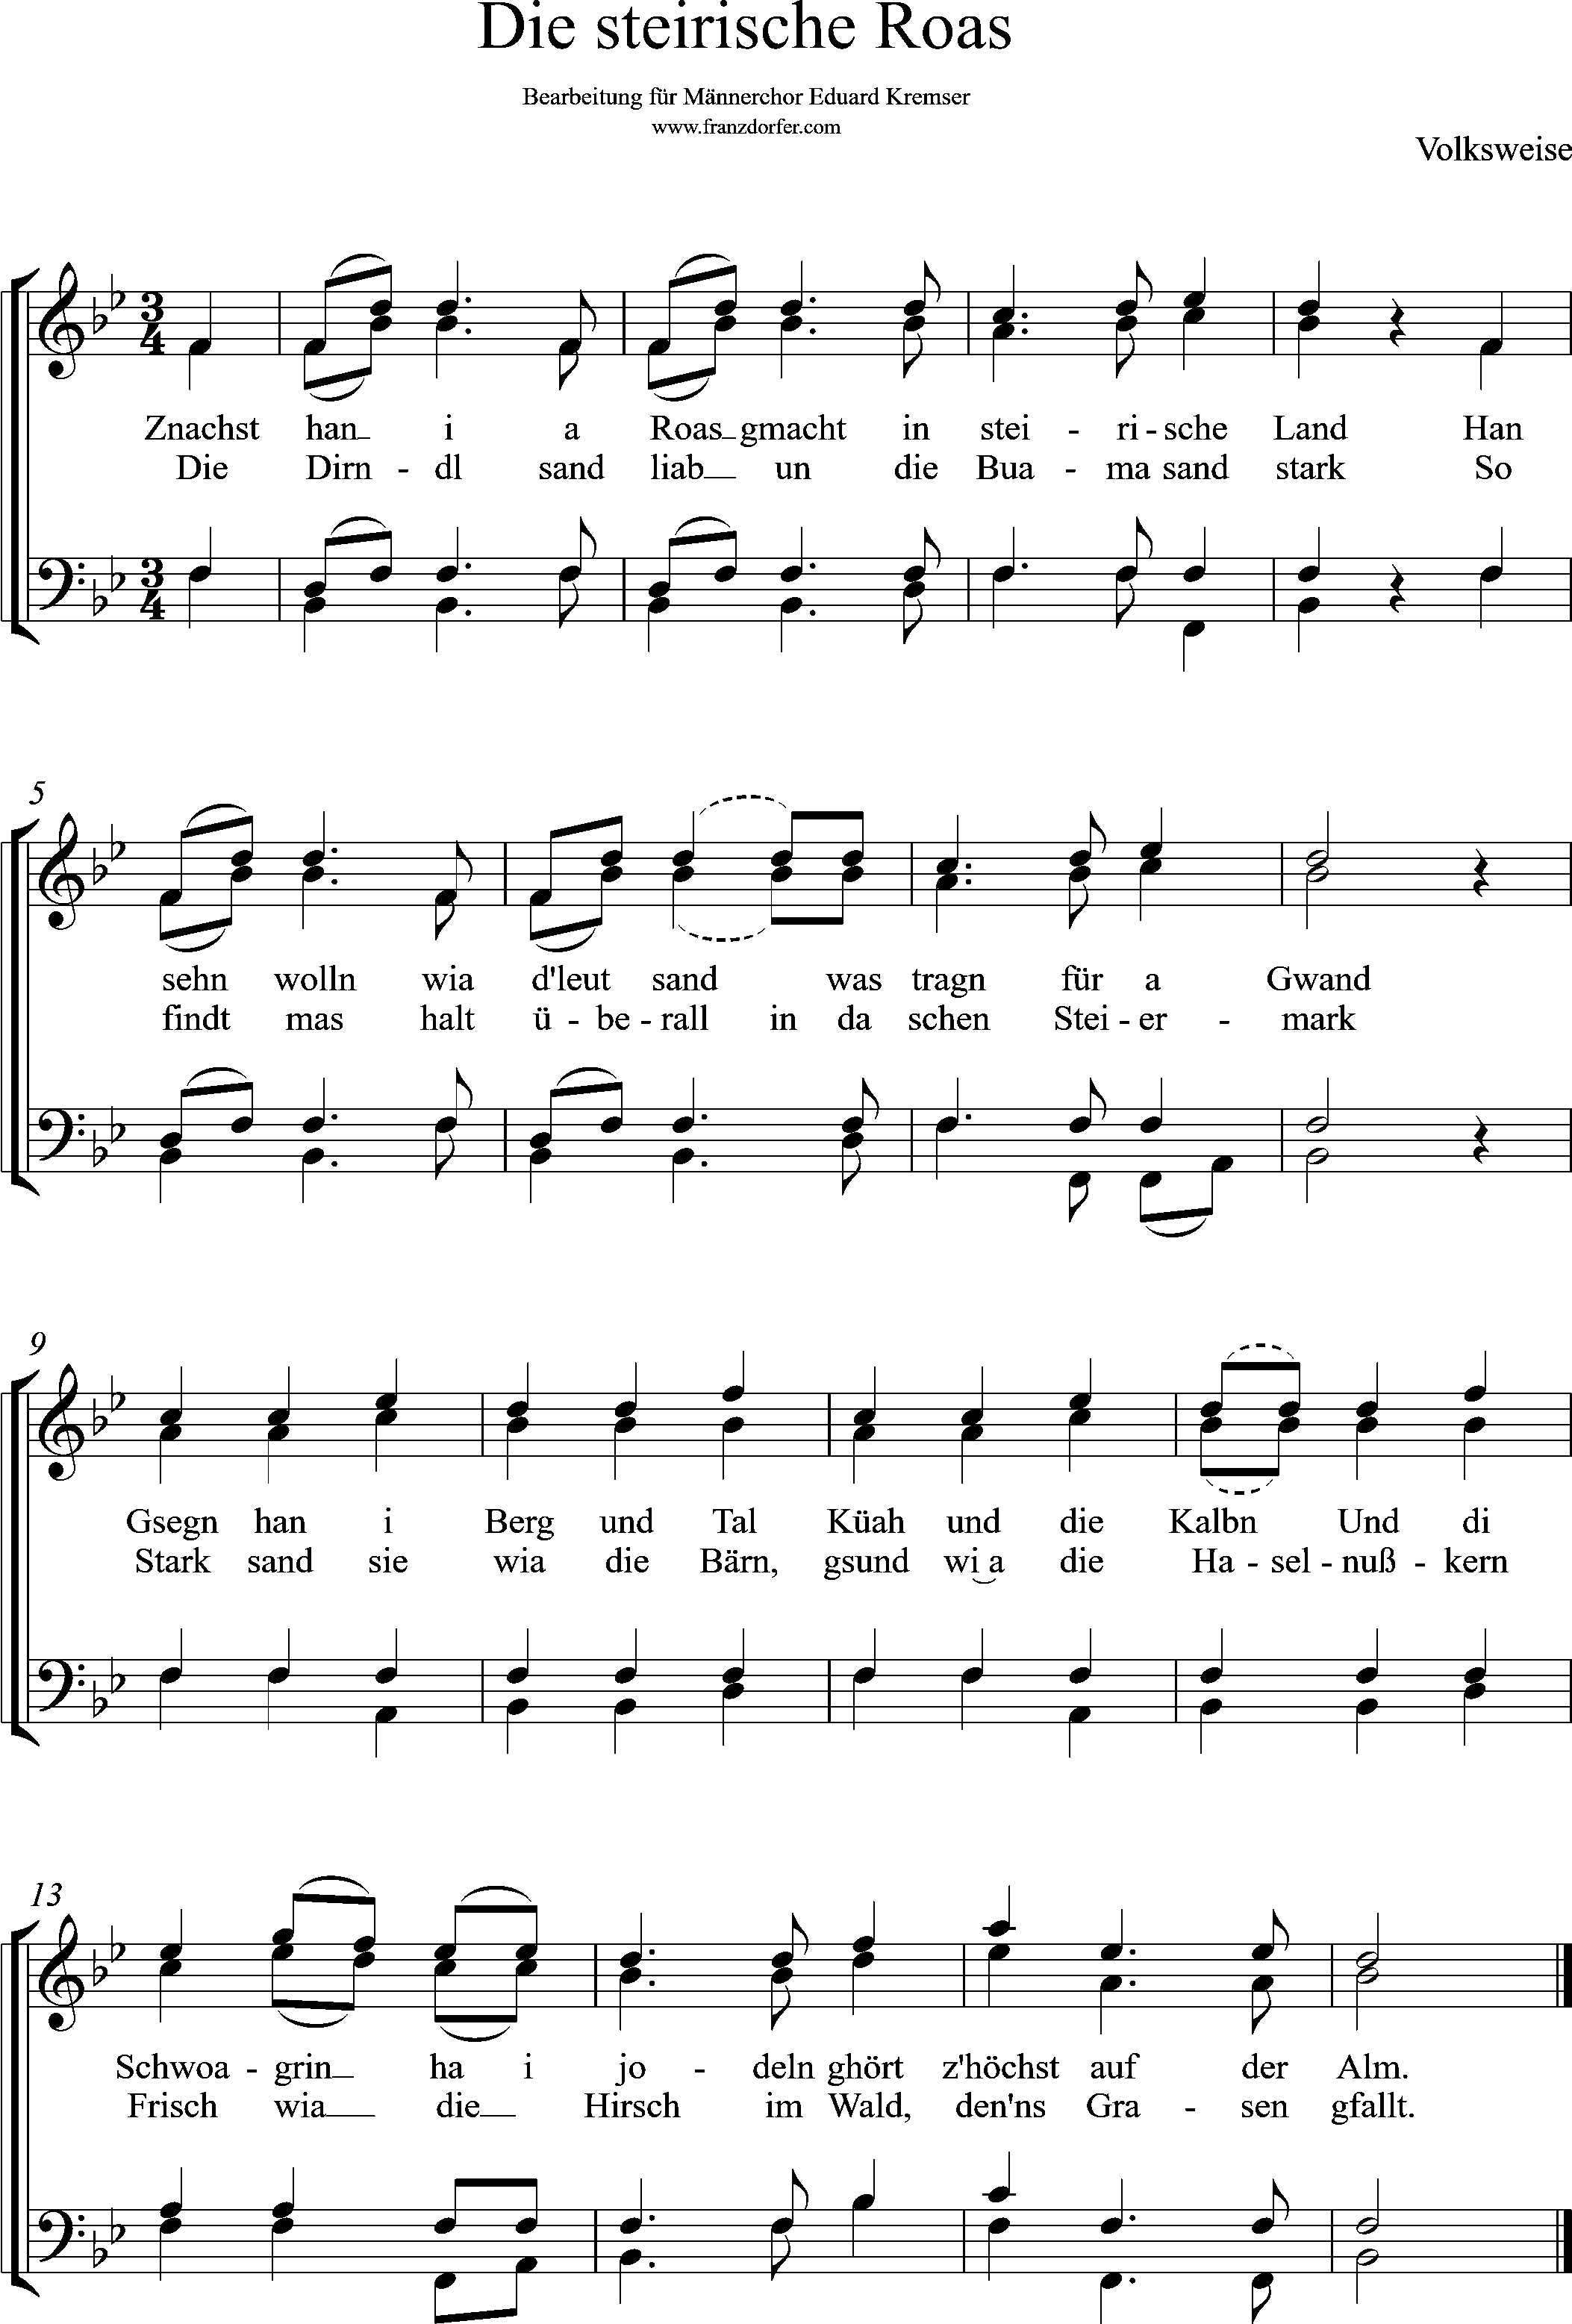 Noten für Männerchor, die steirische Roas